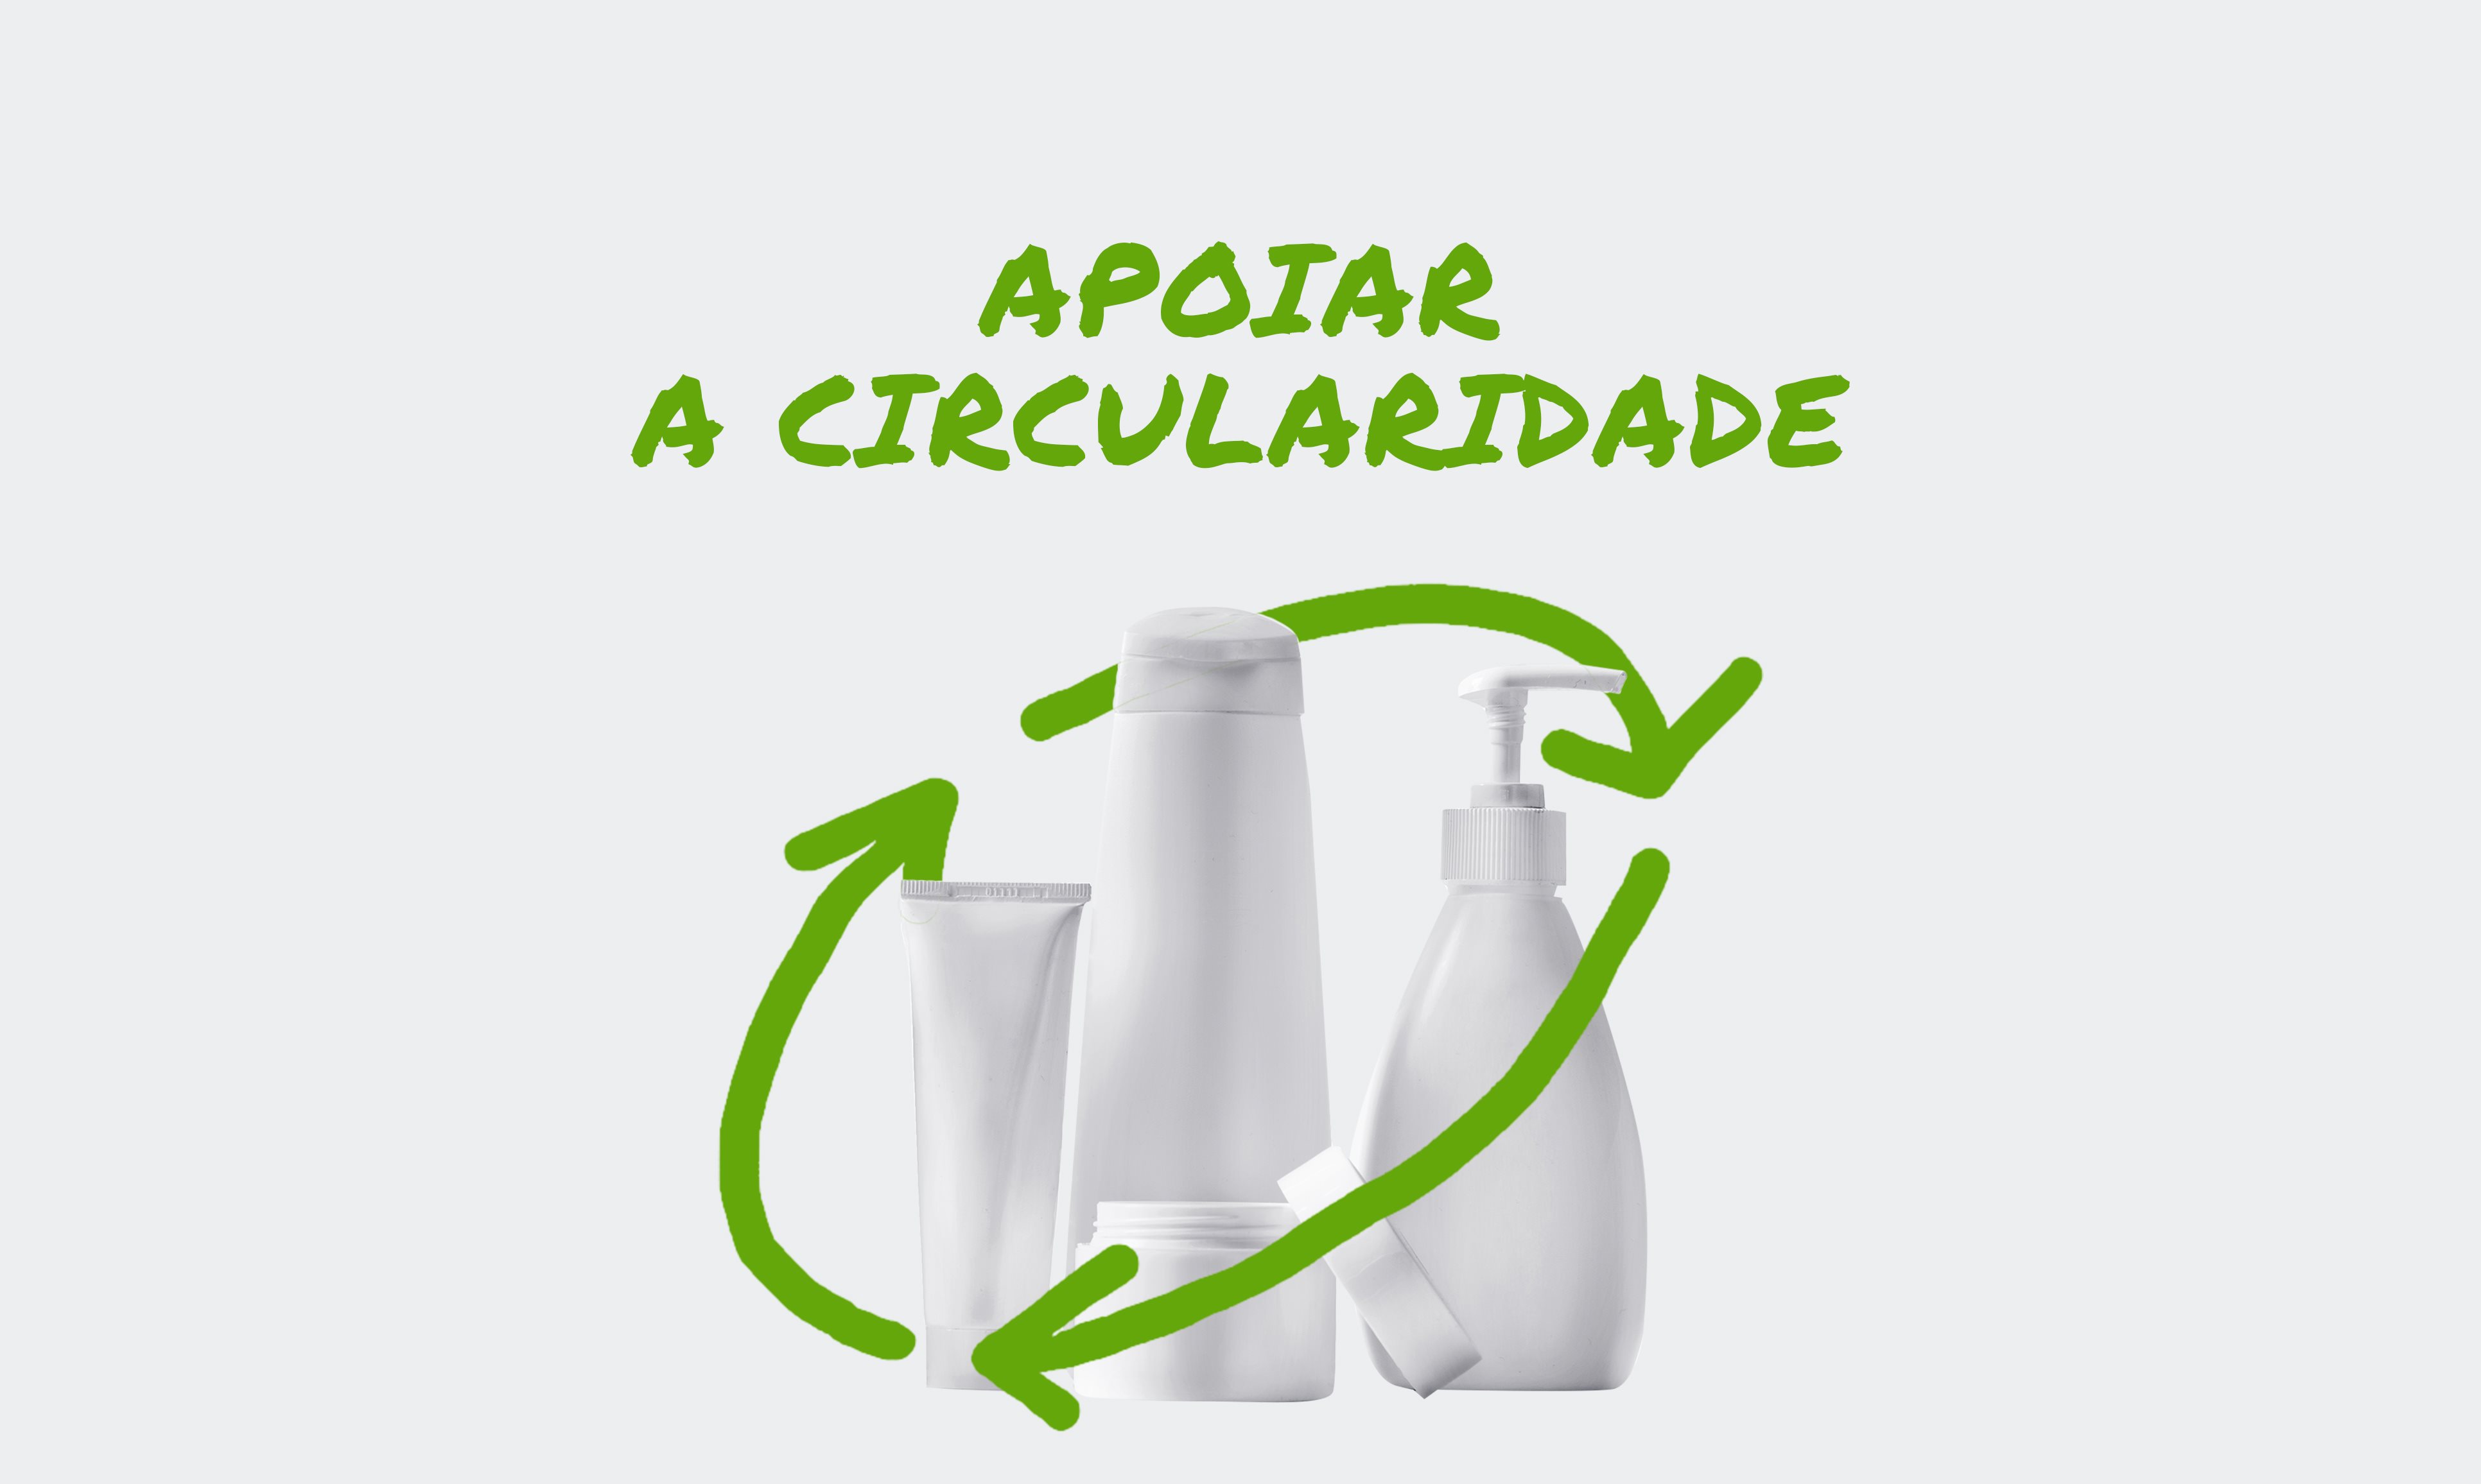 Três embalagens de loção envolvidas por um símbolo de reciclagem estilizado